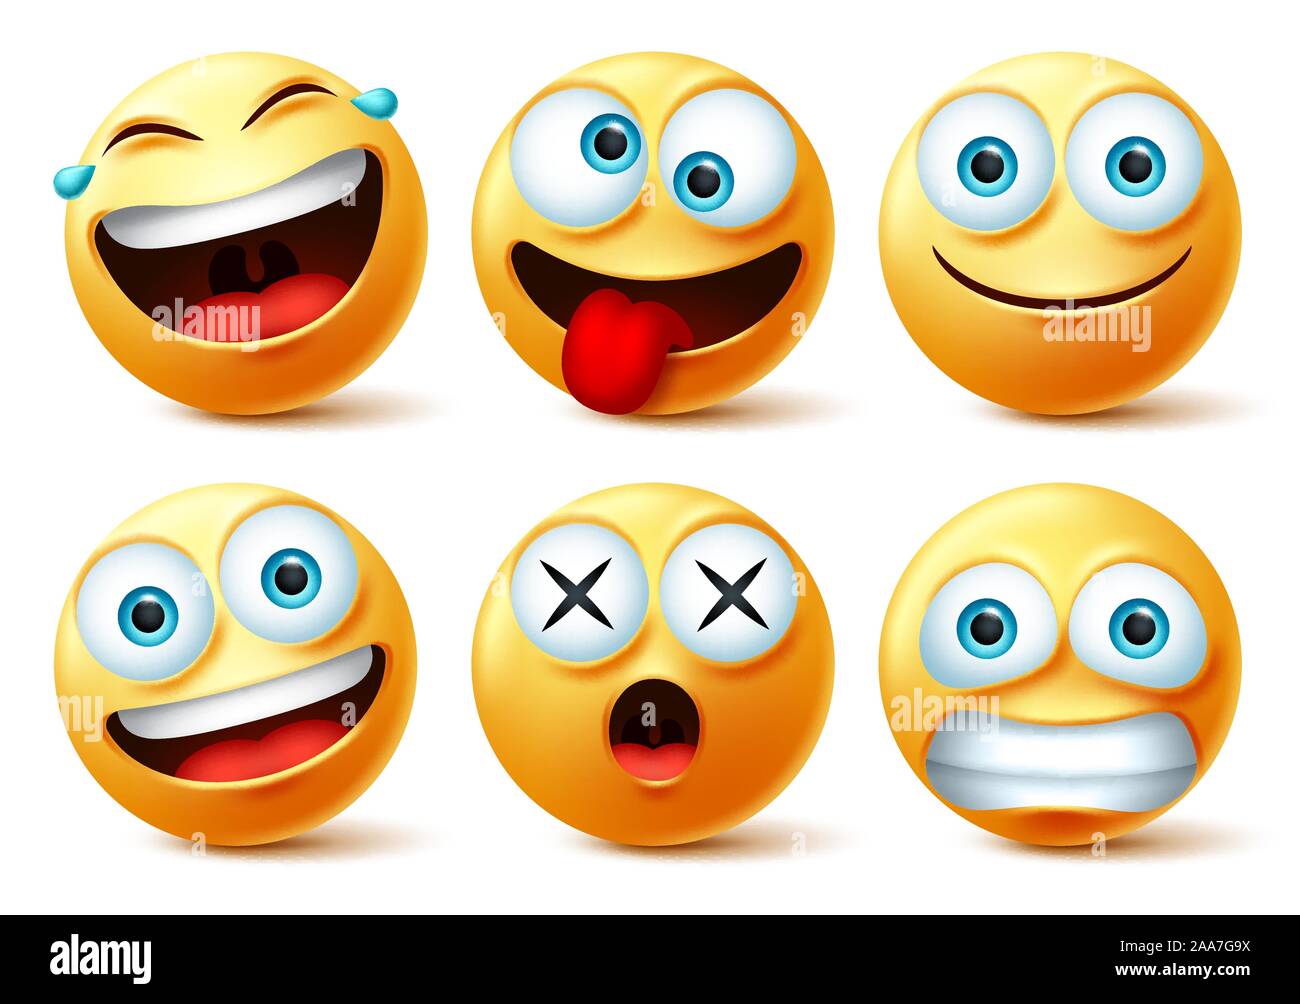 Smileys emoji and emoticon faces vector set. Smiley emojis or emoticons ...